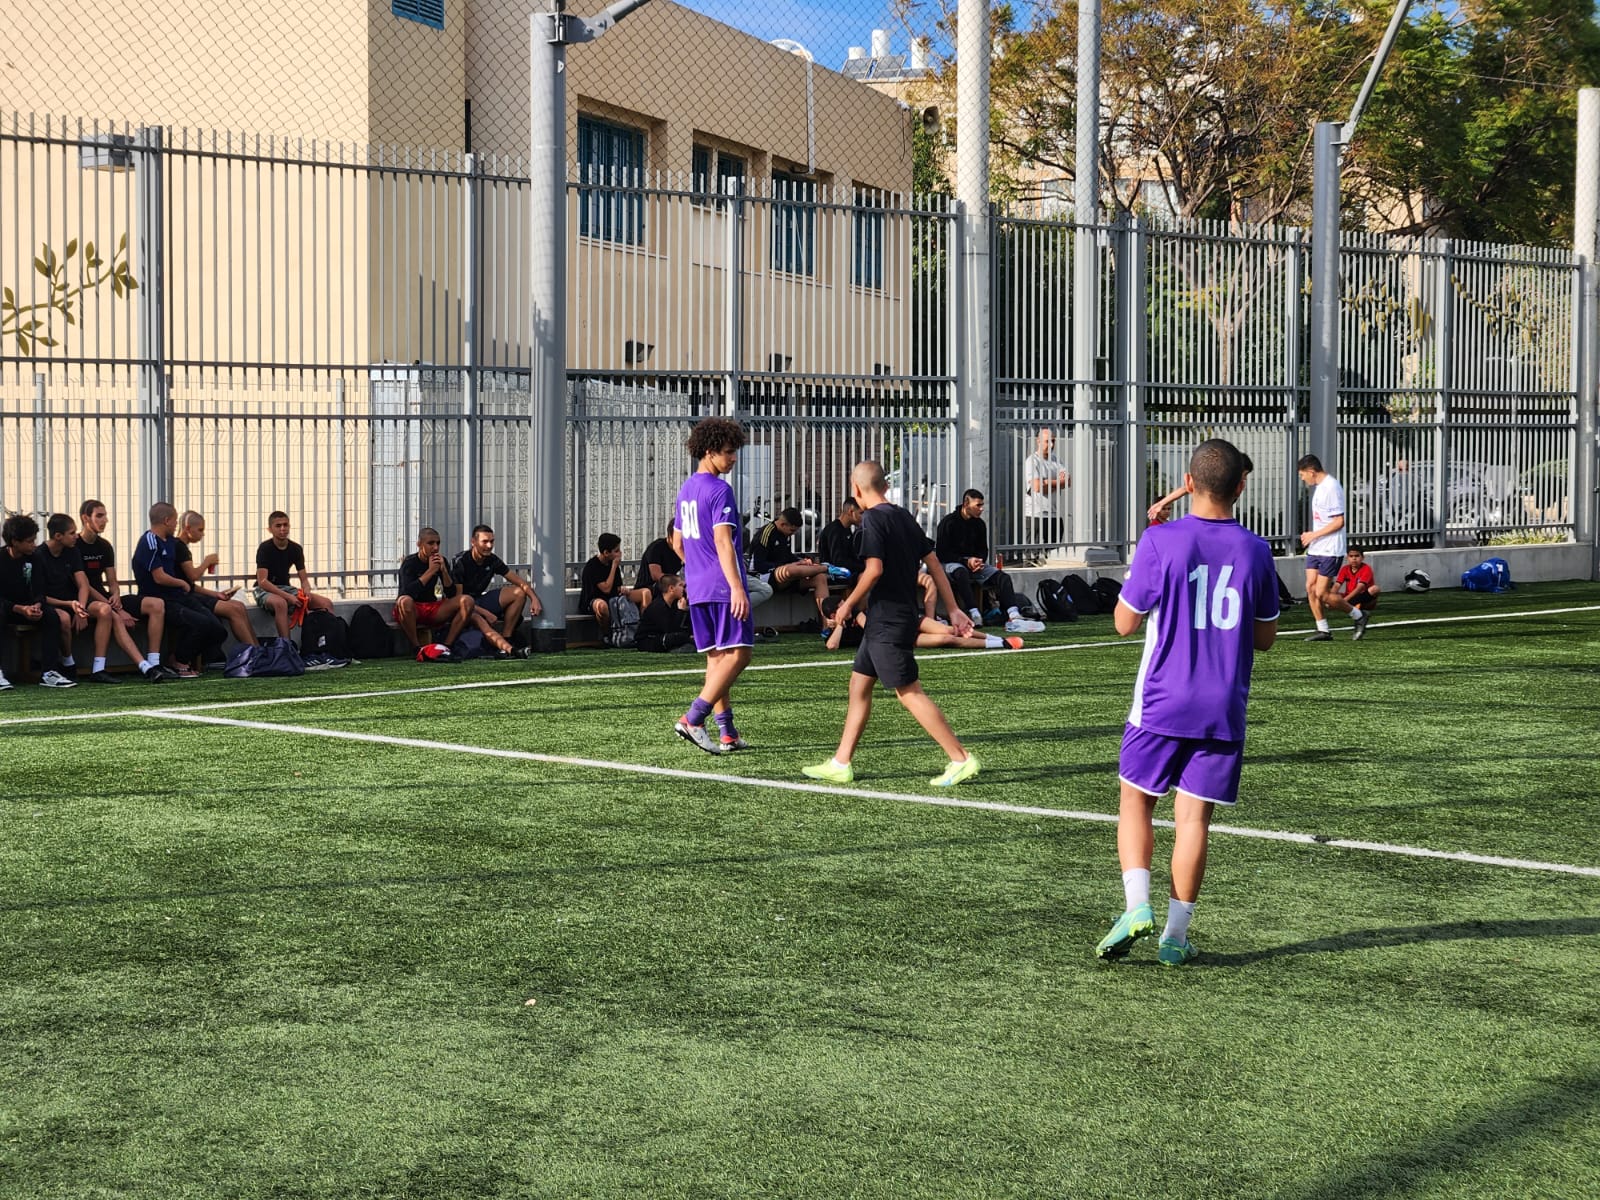 يافا: بالصور لجنة الدعوة والإرشاد تختتم بطولة التسامح لكرة القدم